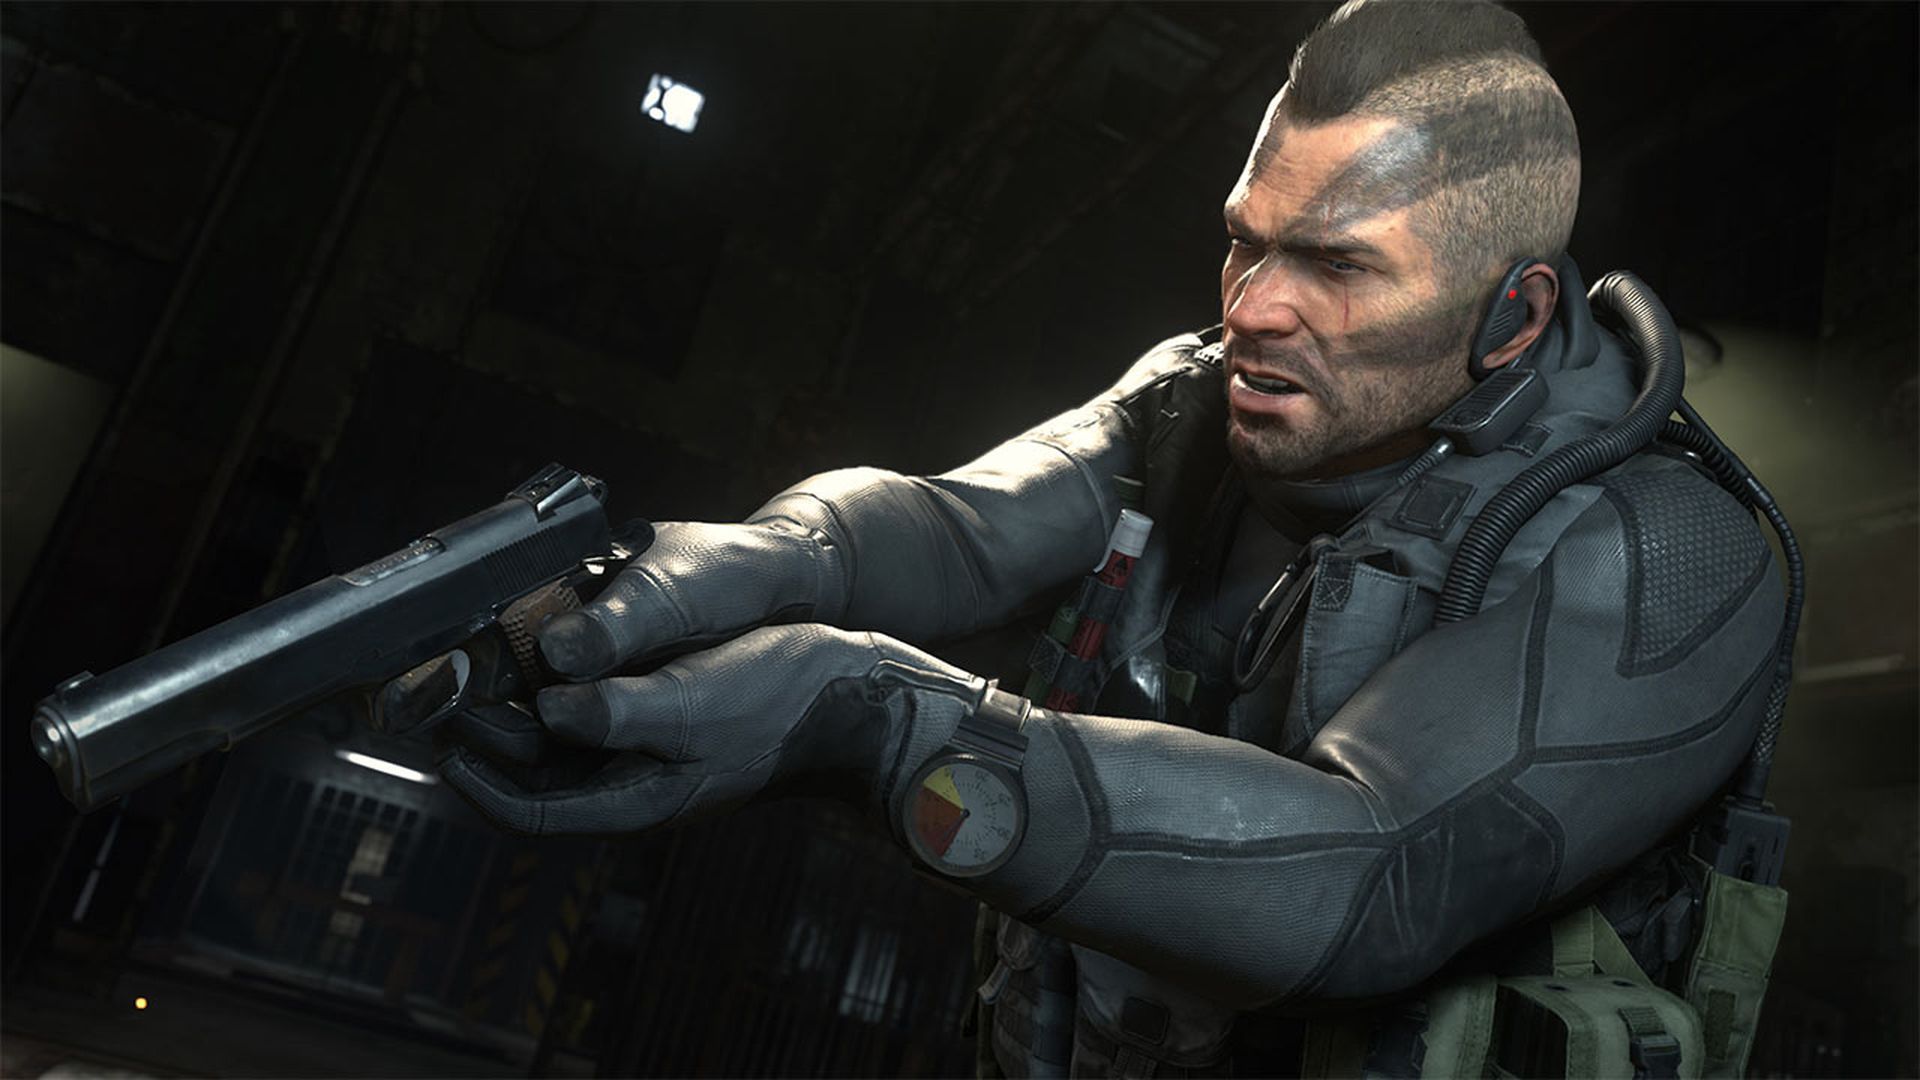 Сегодня мы расскажем, как играть в Call of Duty MW 2 с разделенным экраном, а также ответим на вопрос: "Есть ли в Modern Warfare 2 разделенный экран?"